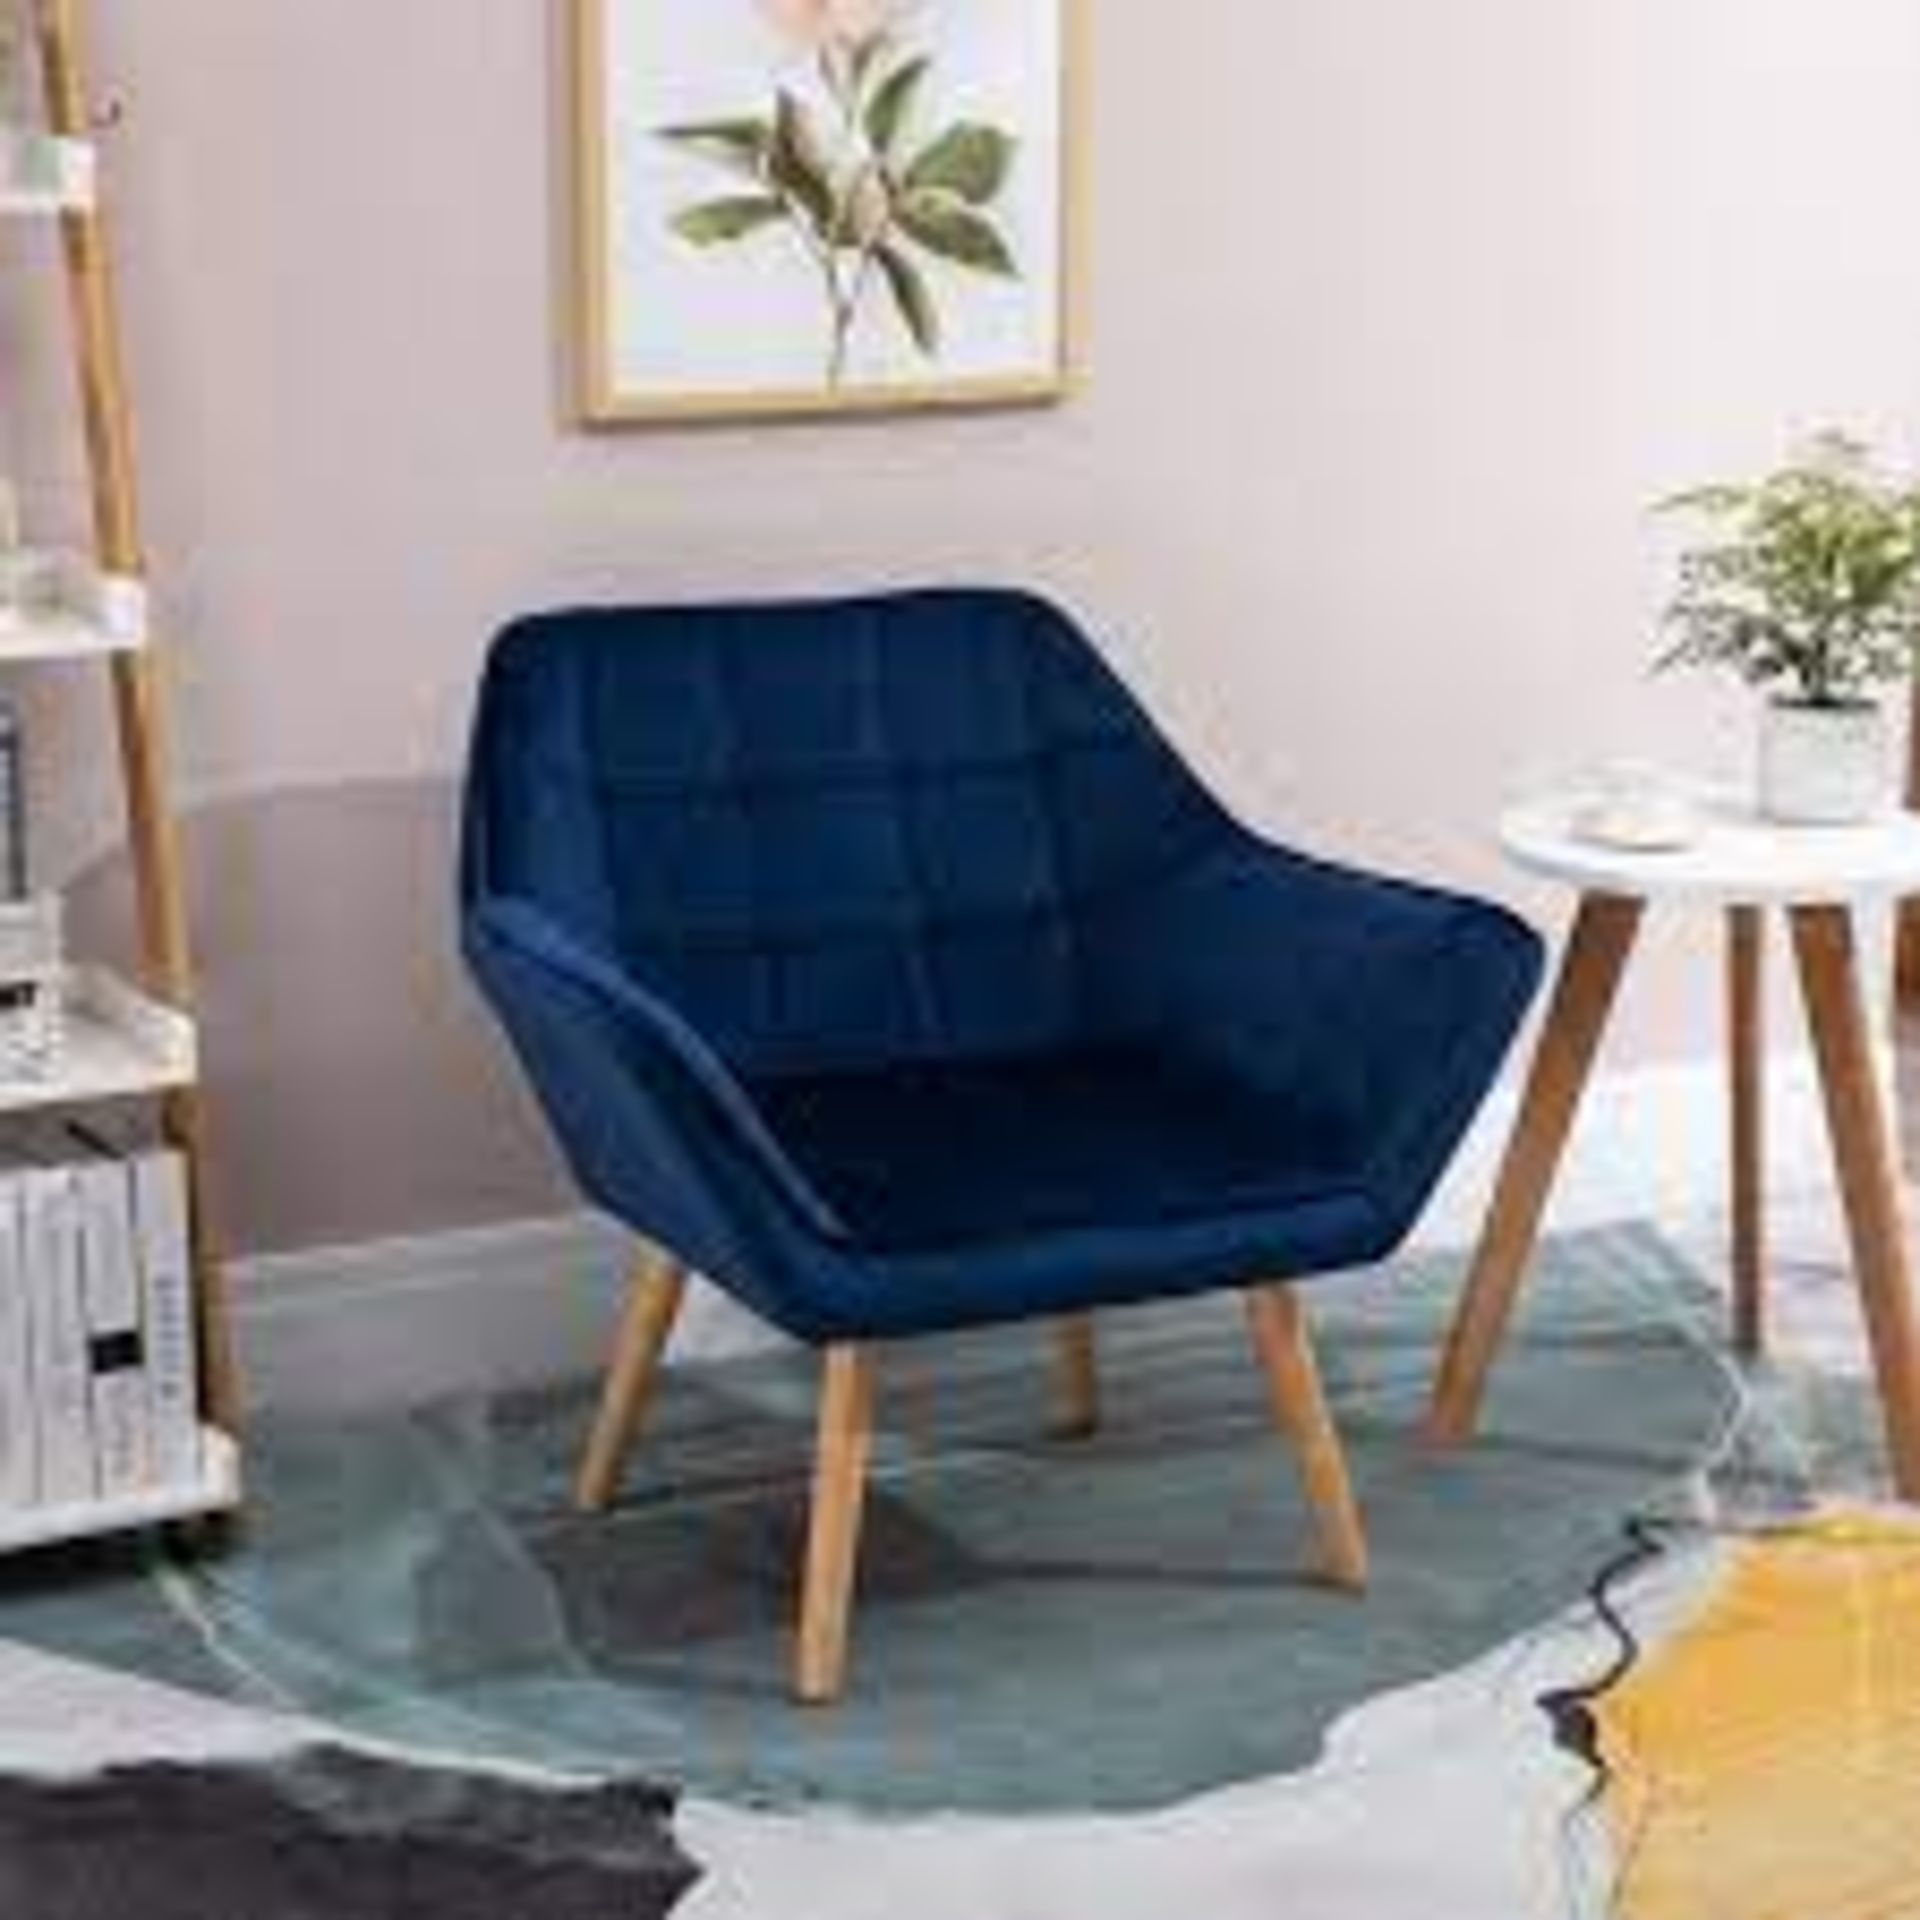 Velvet-Feel Slanted Accent Chair - Blue. - SR4. LUXE DESIGN: Covered in velvet-feel material for a